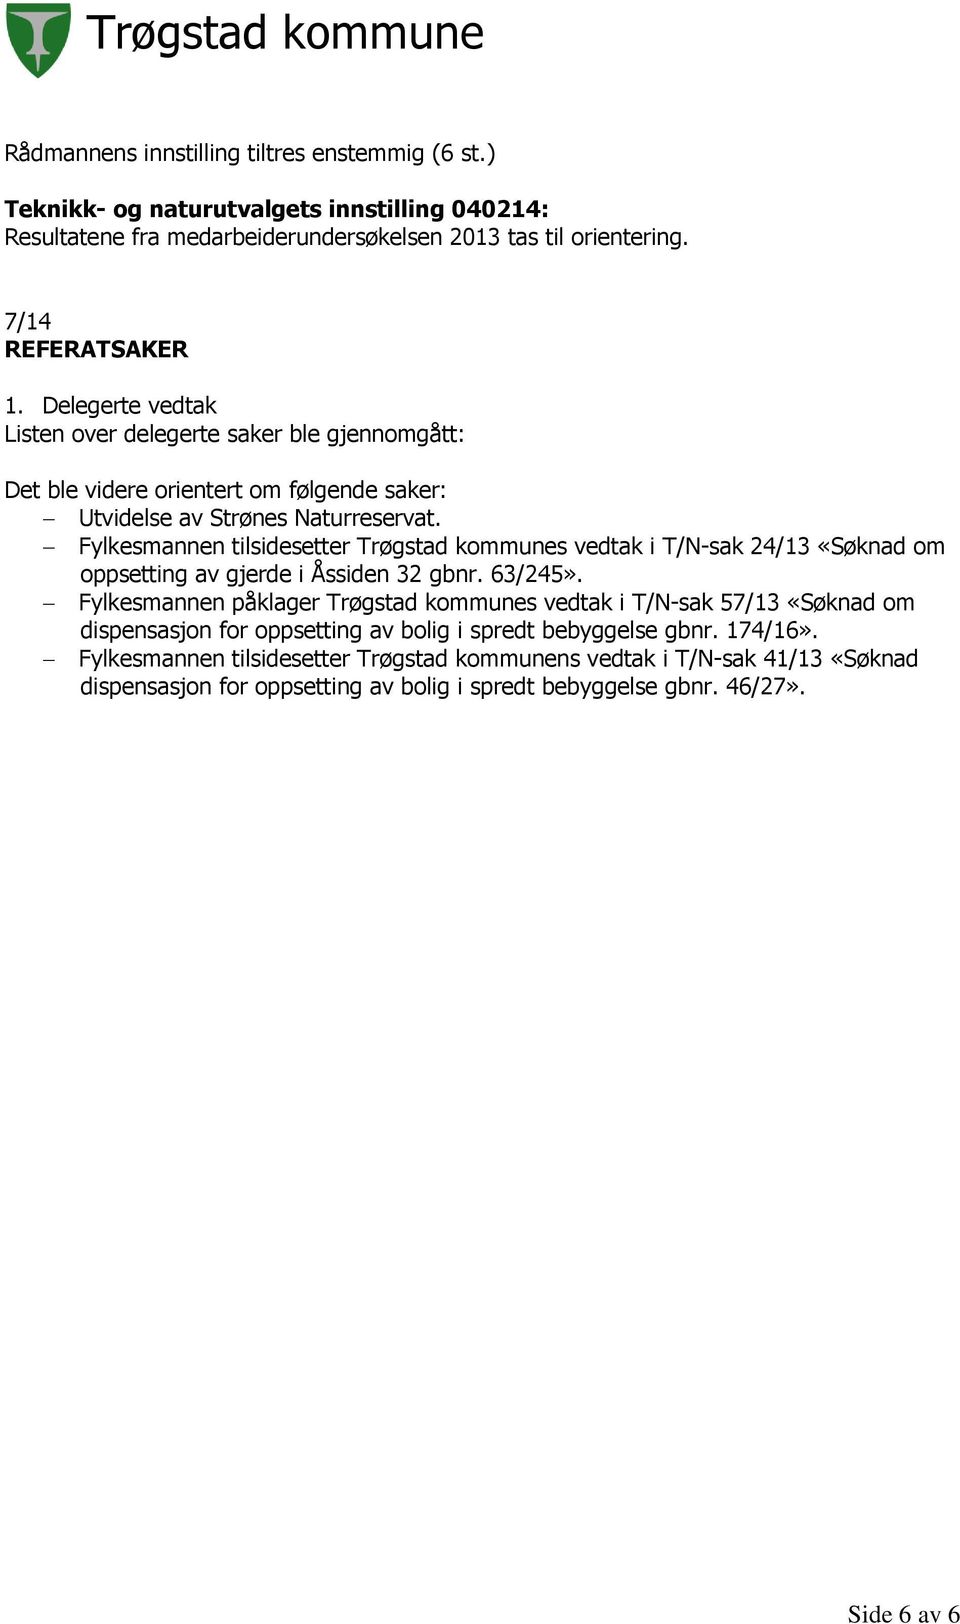 Fylkesmannen tilsidesetter Trøgstad kommunes vedtak i T/N-sak 24/13 «Søknad om oppsetting av gjerde i Åssiden 32 gbnr. 63/245».